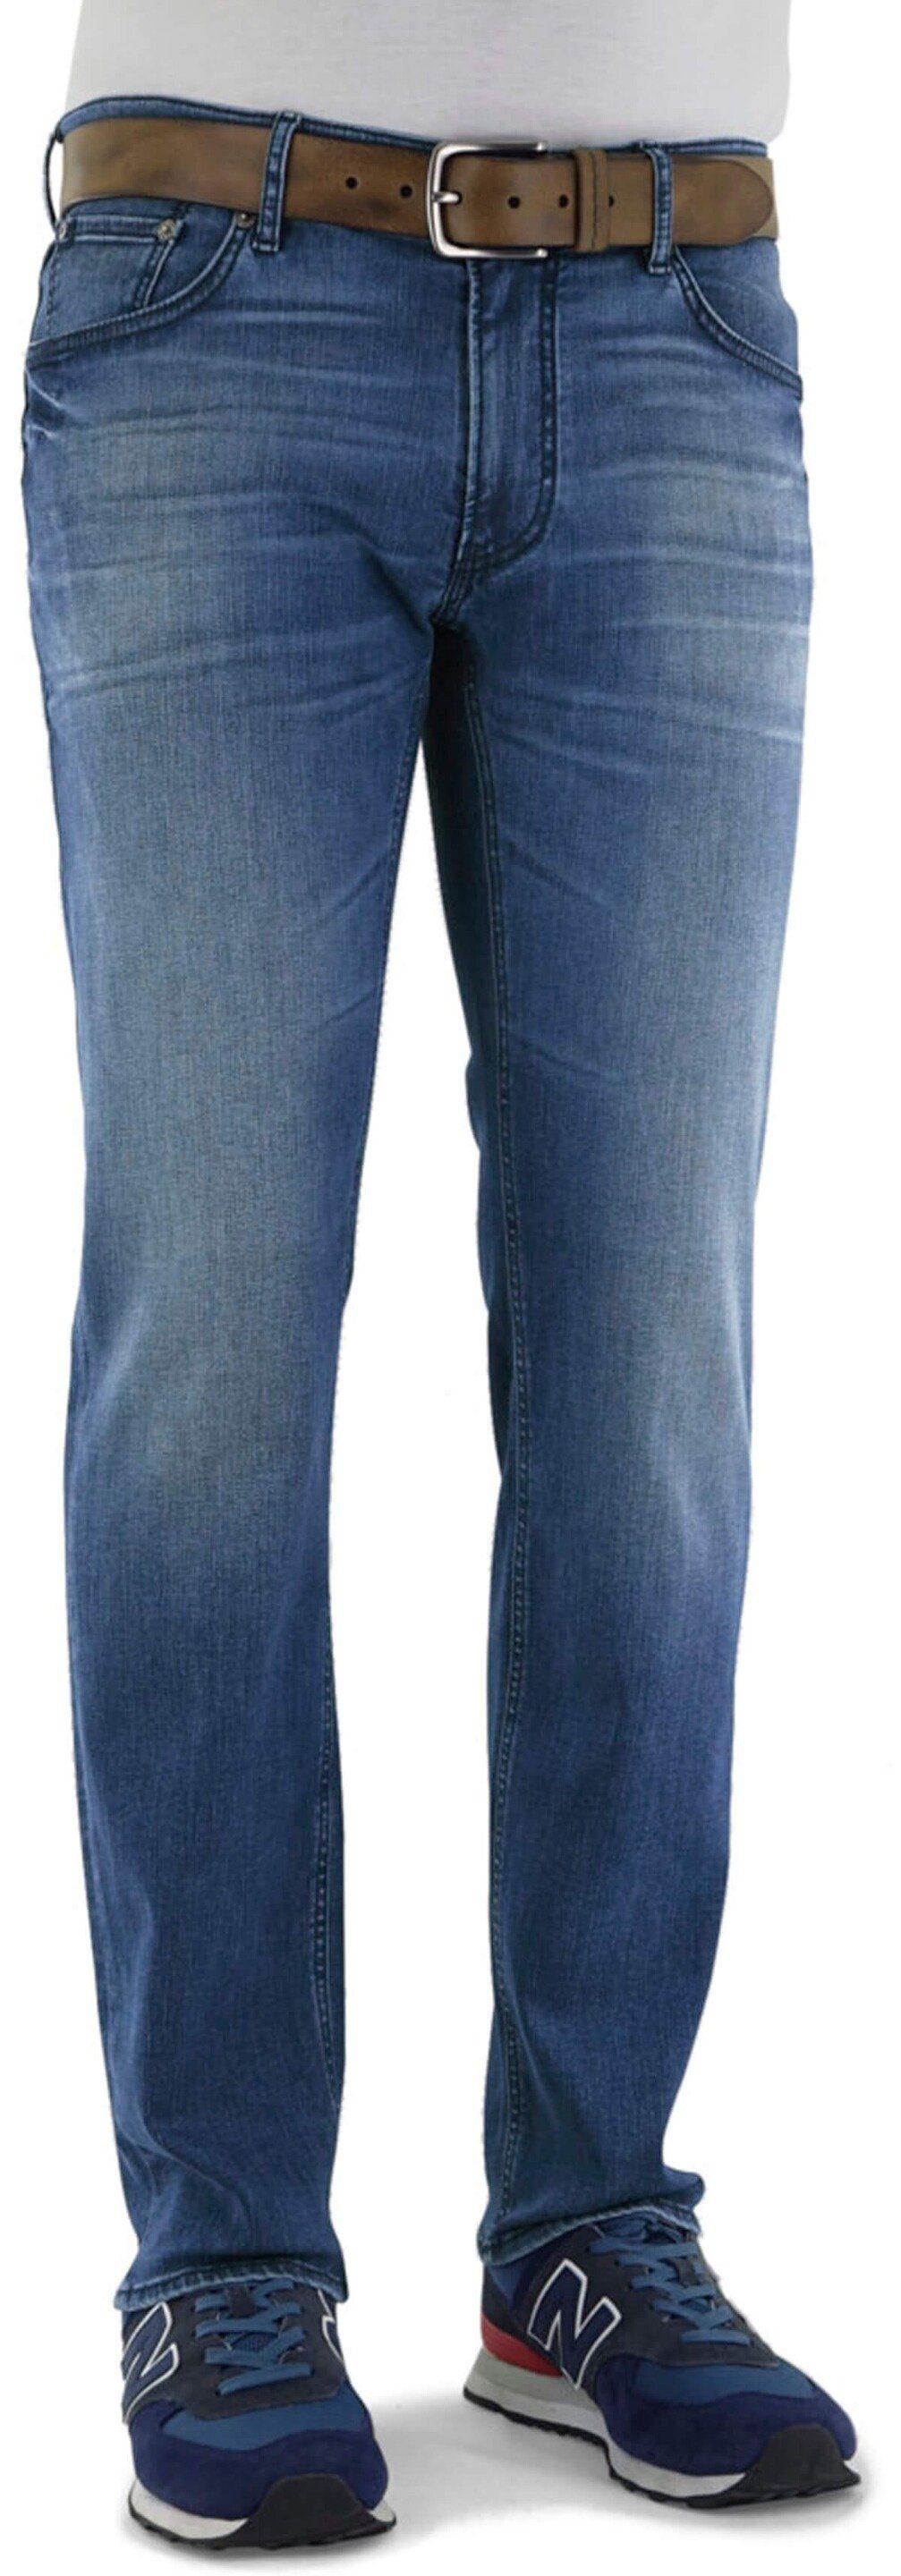 Brax Regular-fit-Jeans Modern darkblue Chuck Fit Denim Hi-Flex Jeans BRAX